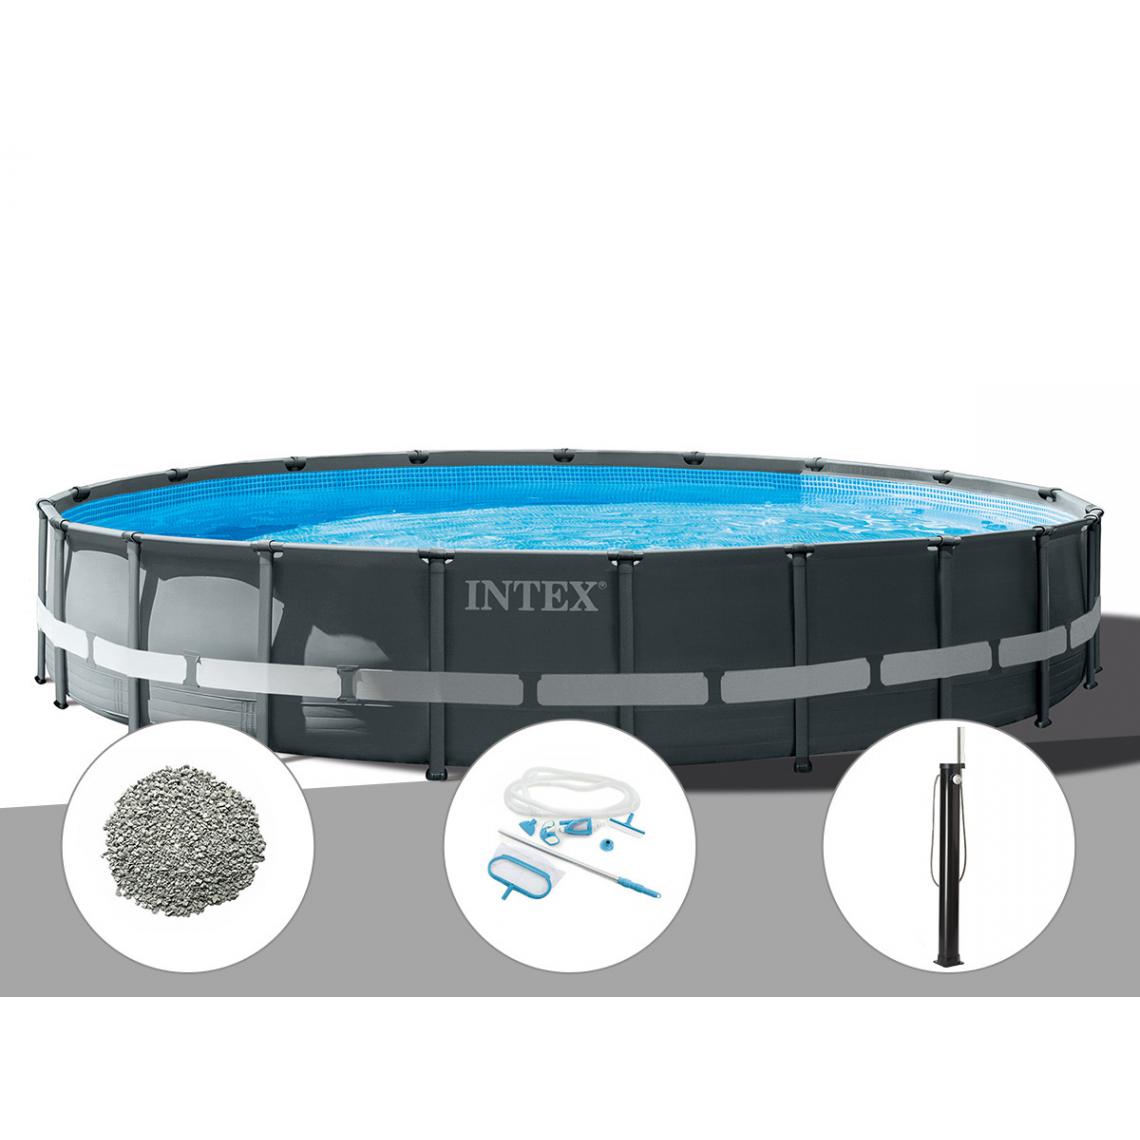 Intex - Kit piscine tubulaire Intex Ultra XTR Frame ronde 6,10 x 1,22 m + 20 kg de zéolite + Kit d'entretien + Douche solaire - Piscine Tubulaire